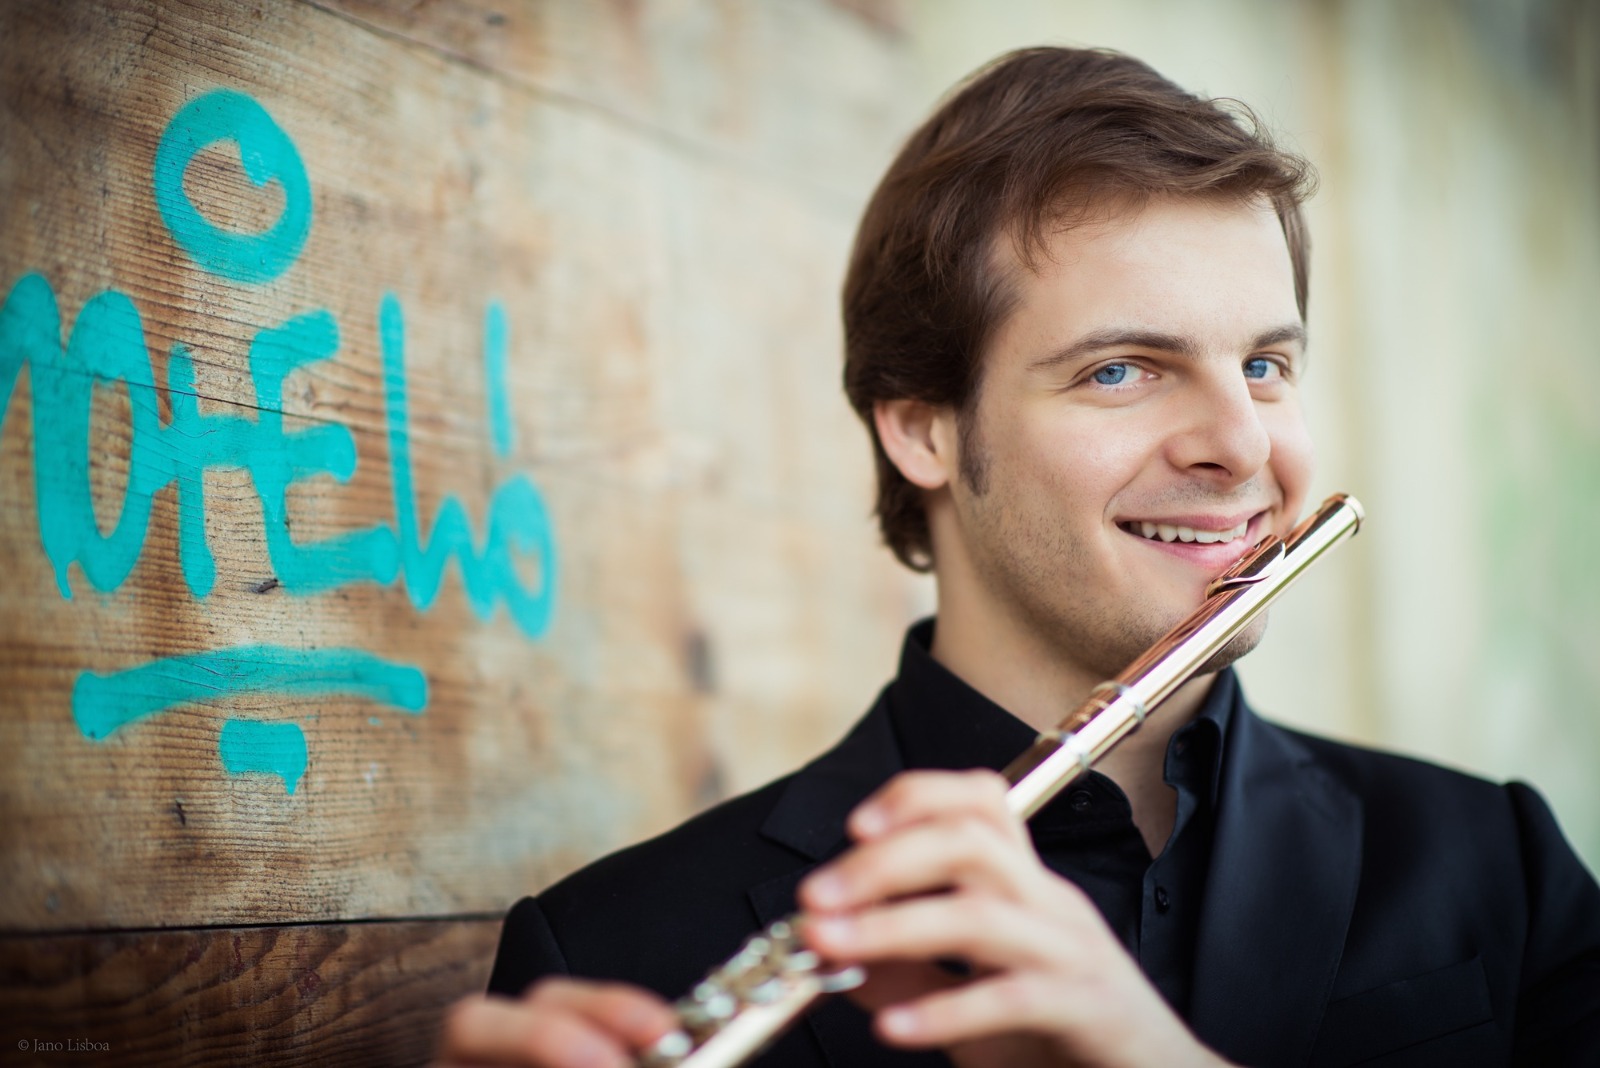 Jakot e OFB in concerto: il primo flauto dei Berliner Philharmoniker al Teatro comunale